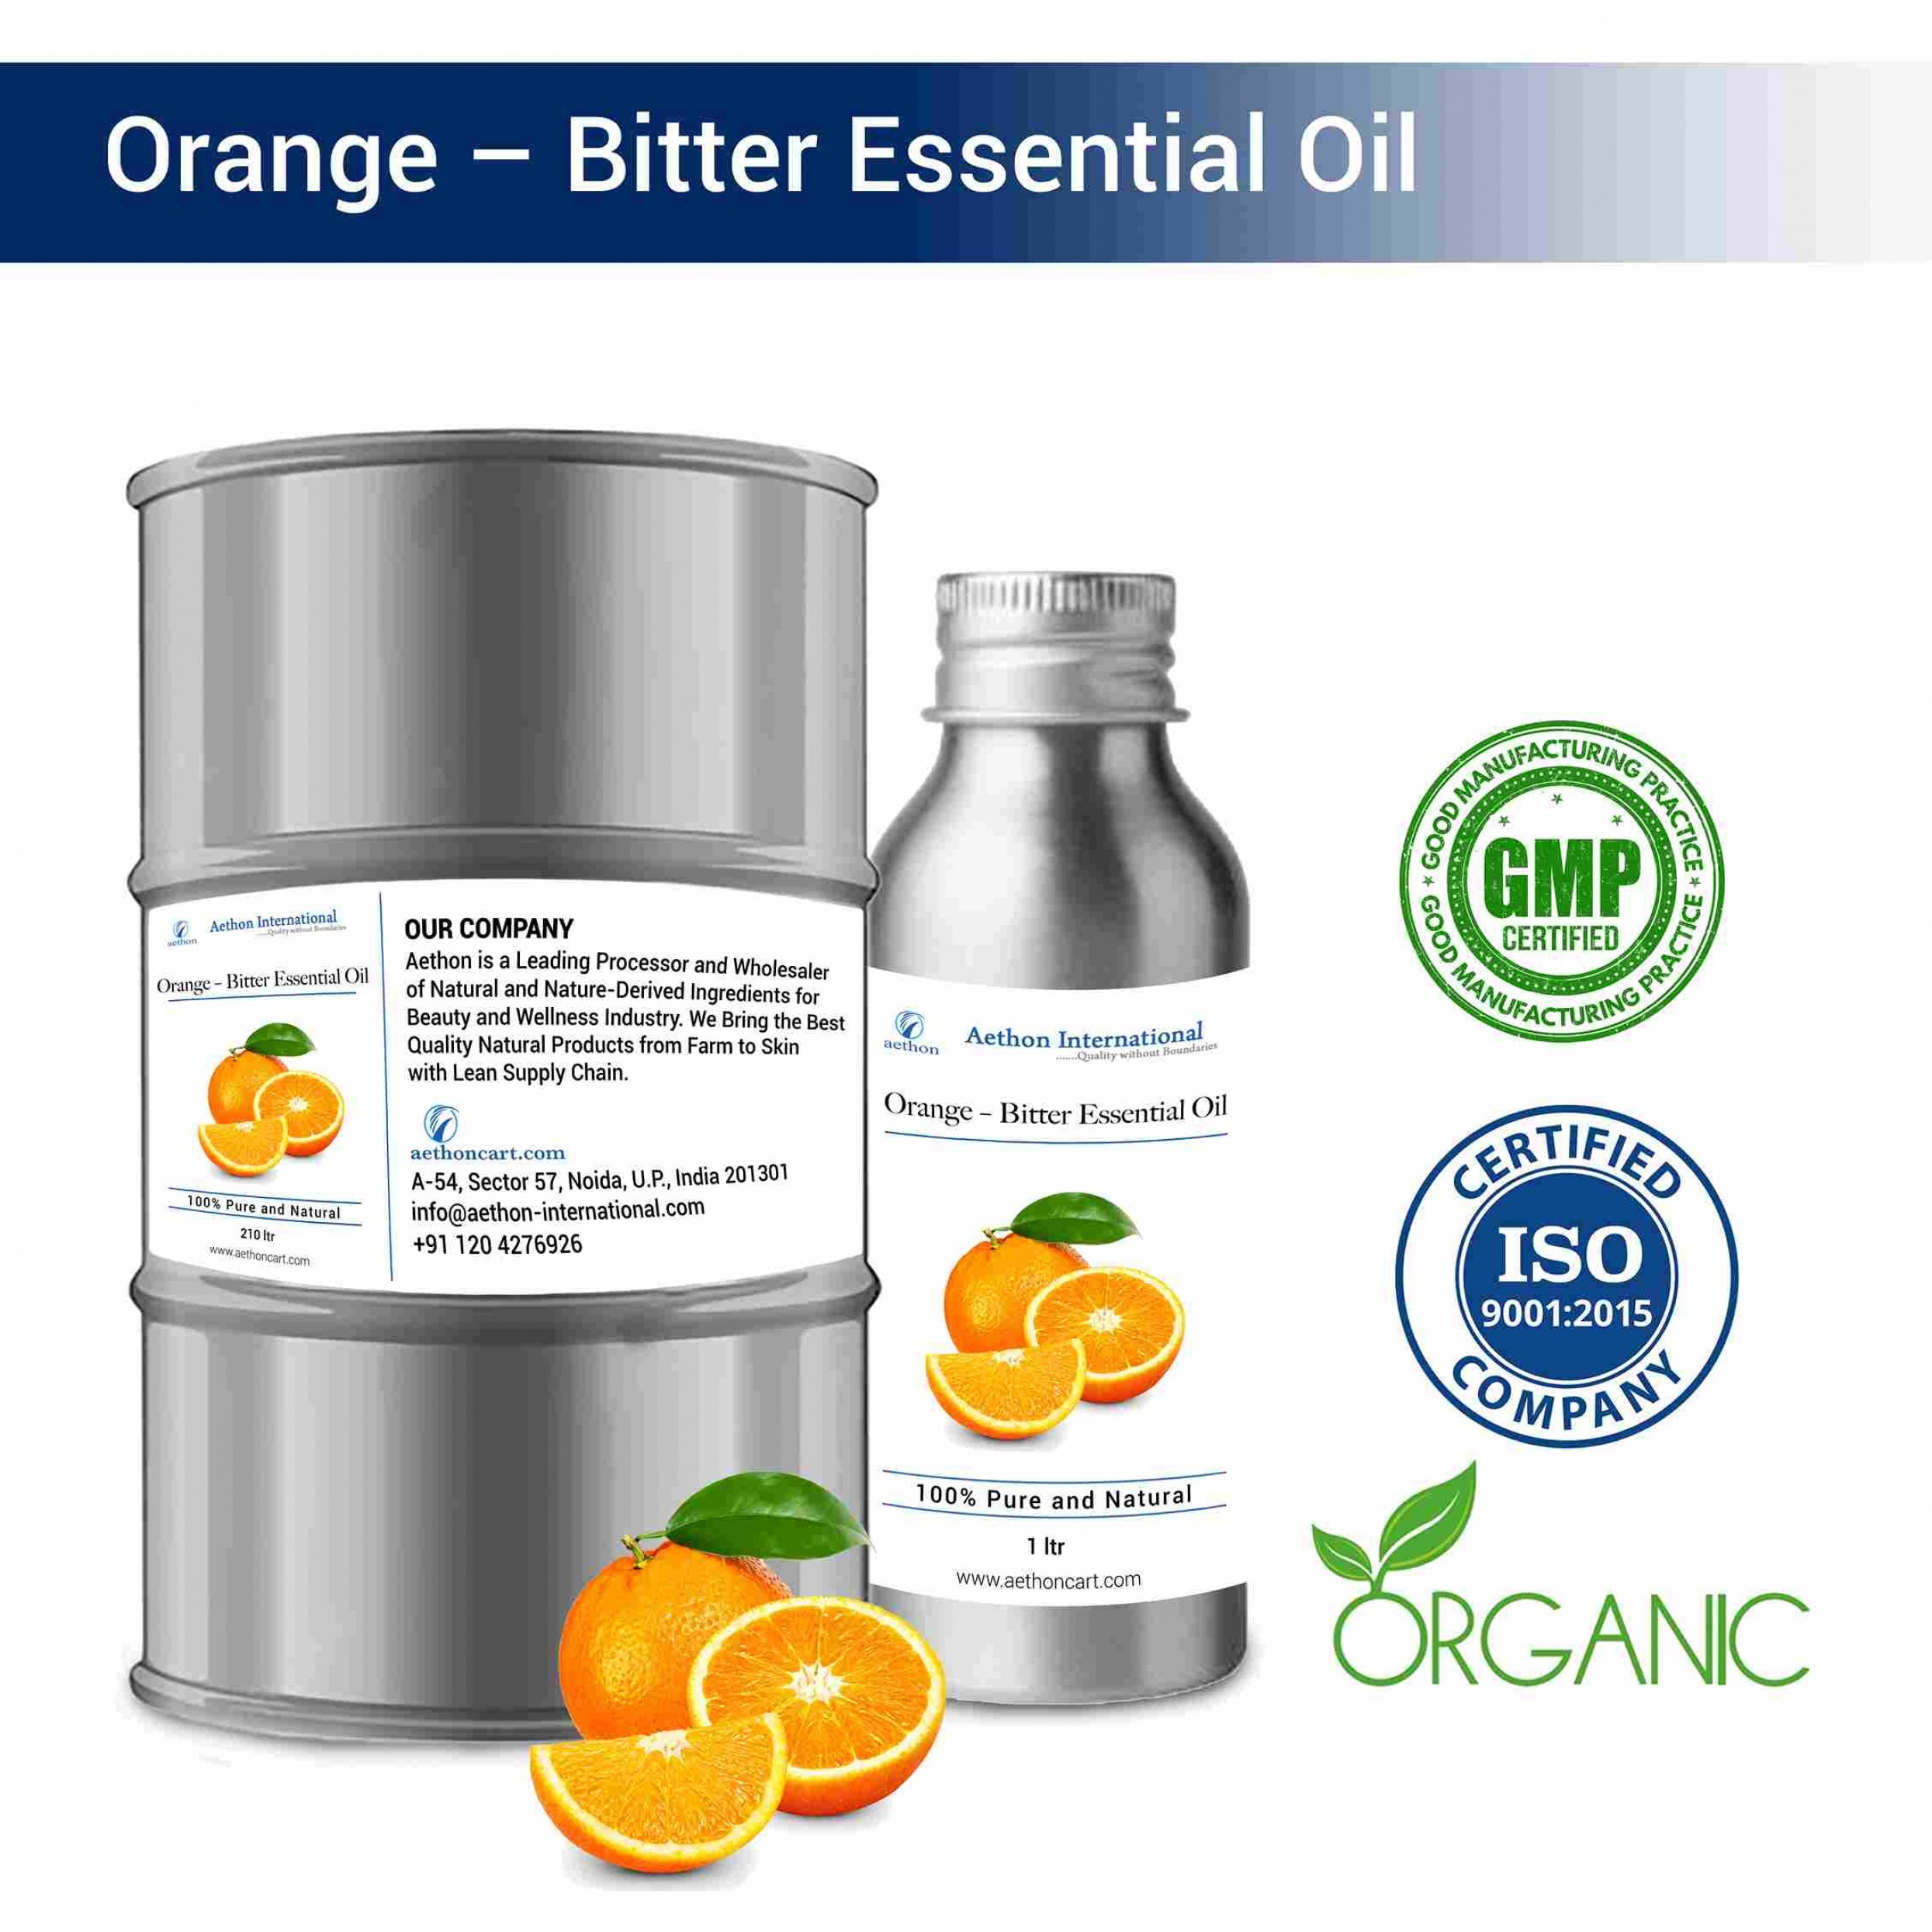 Orange – Bitter Essential Oil